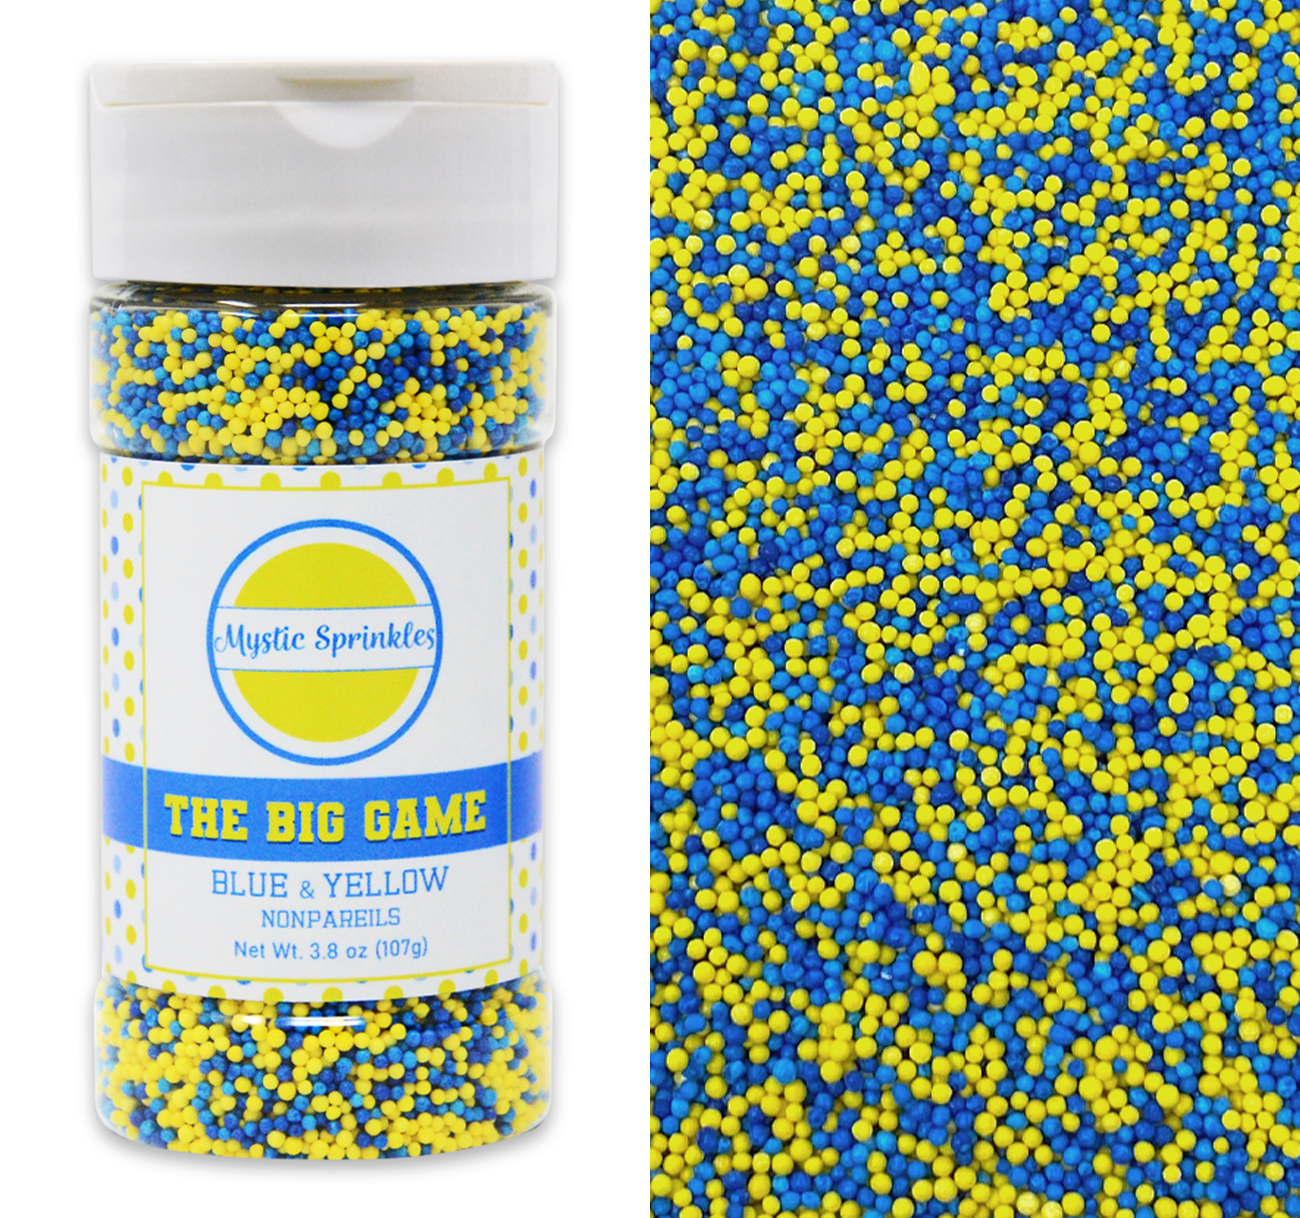 The Big Game: Blue & Yellow Nonpareil Mix 3.8oz